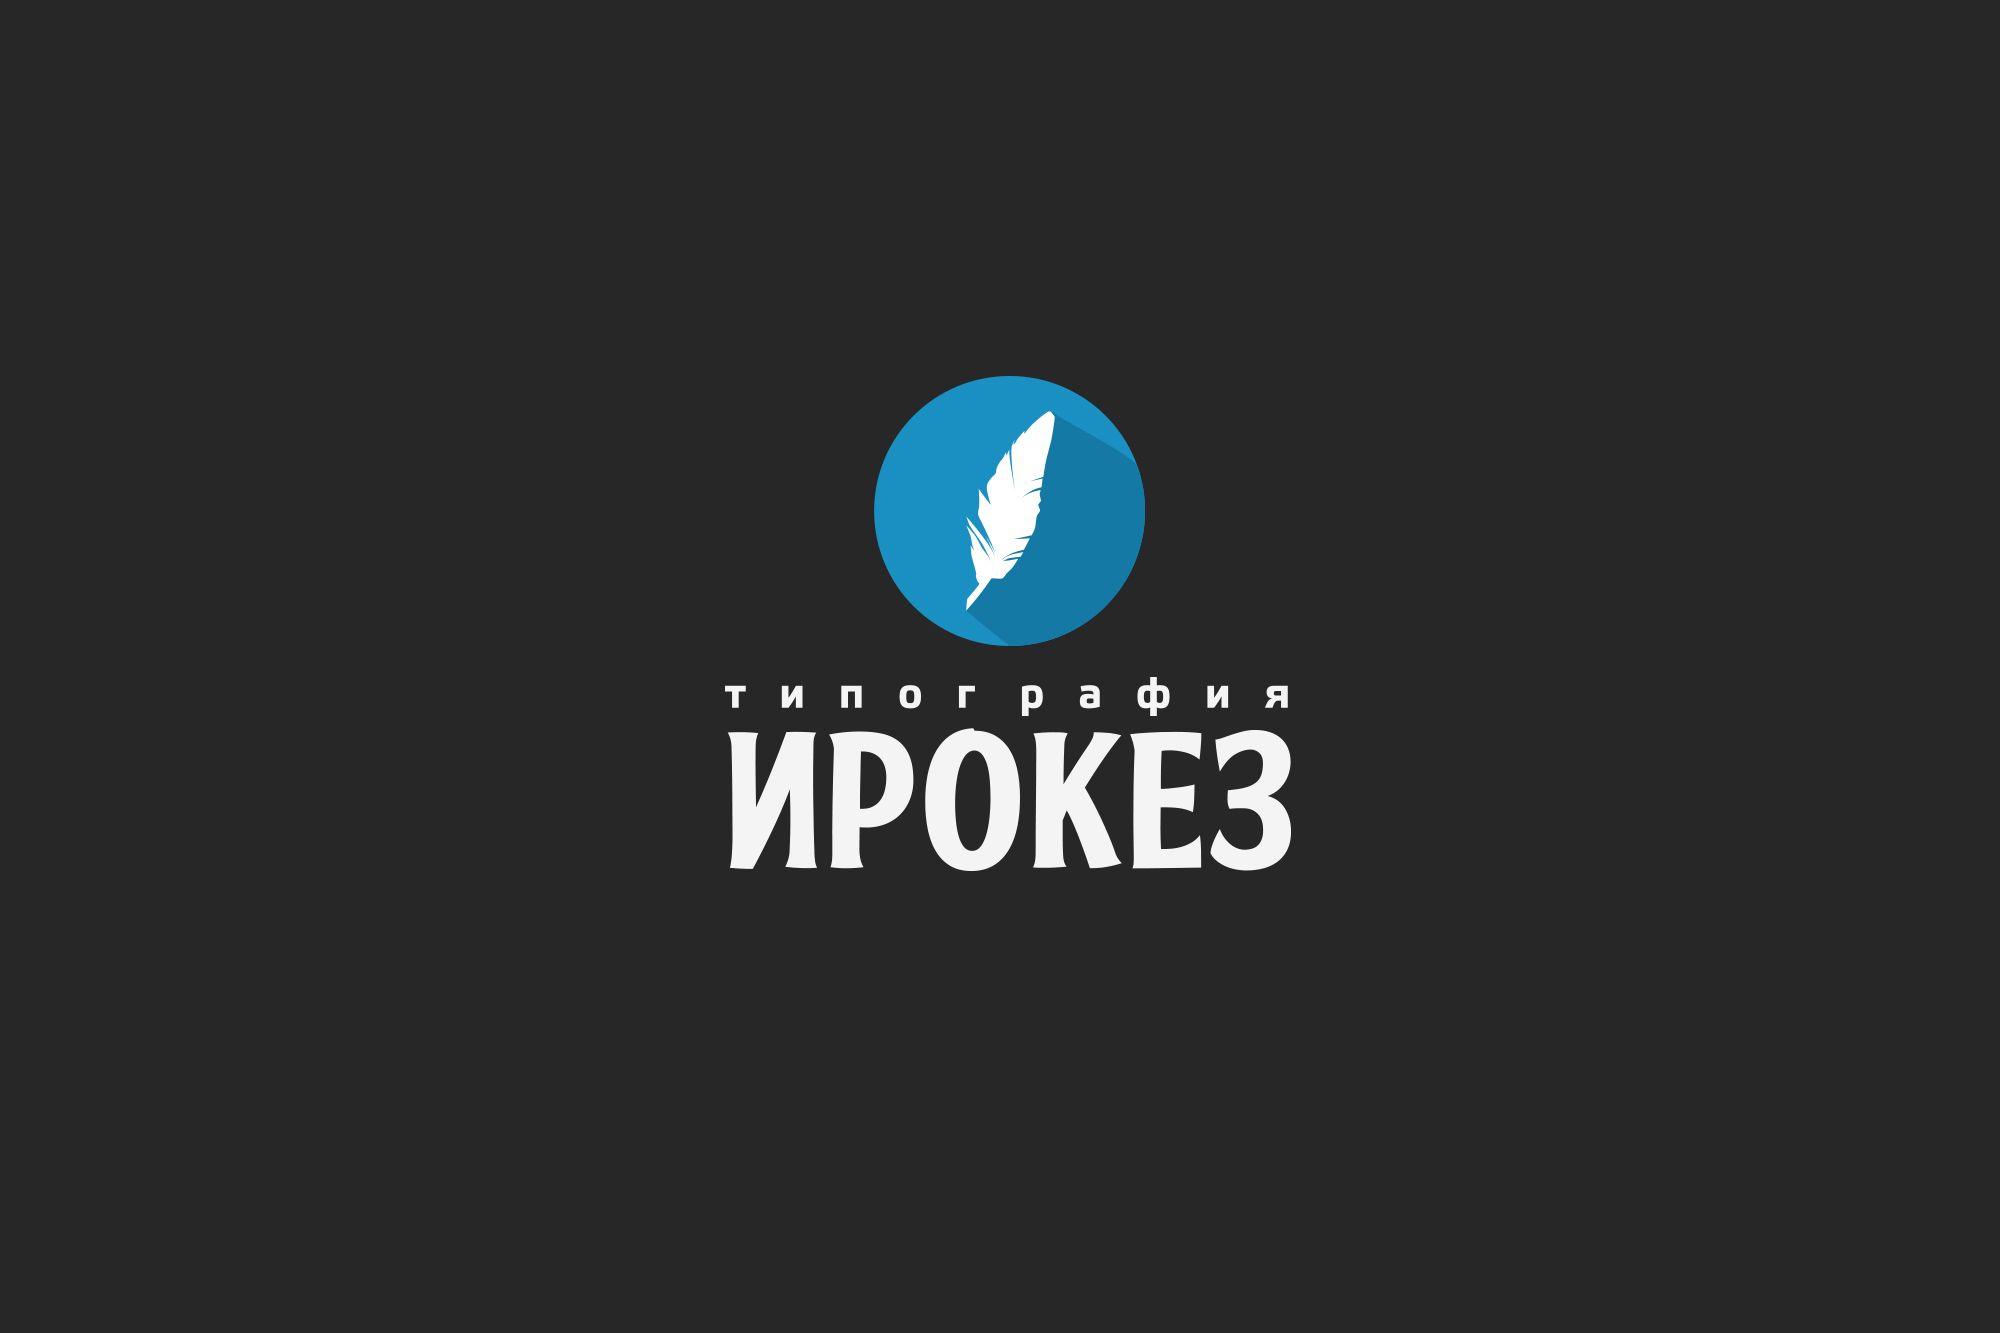 Редизайн лого и дизайн ФС для типографии Ирокез - дизайнер funkielevis